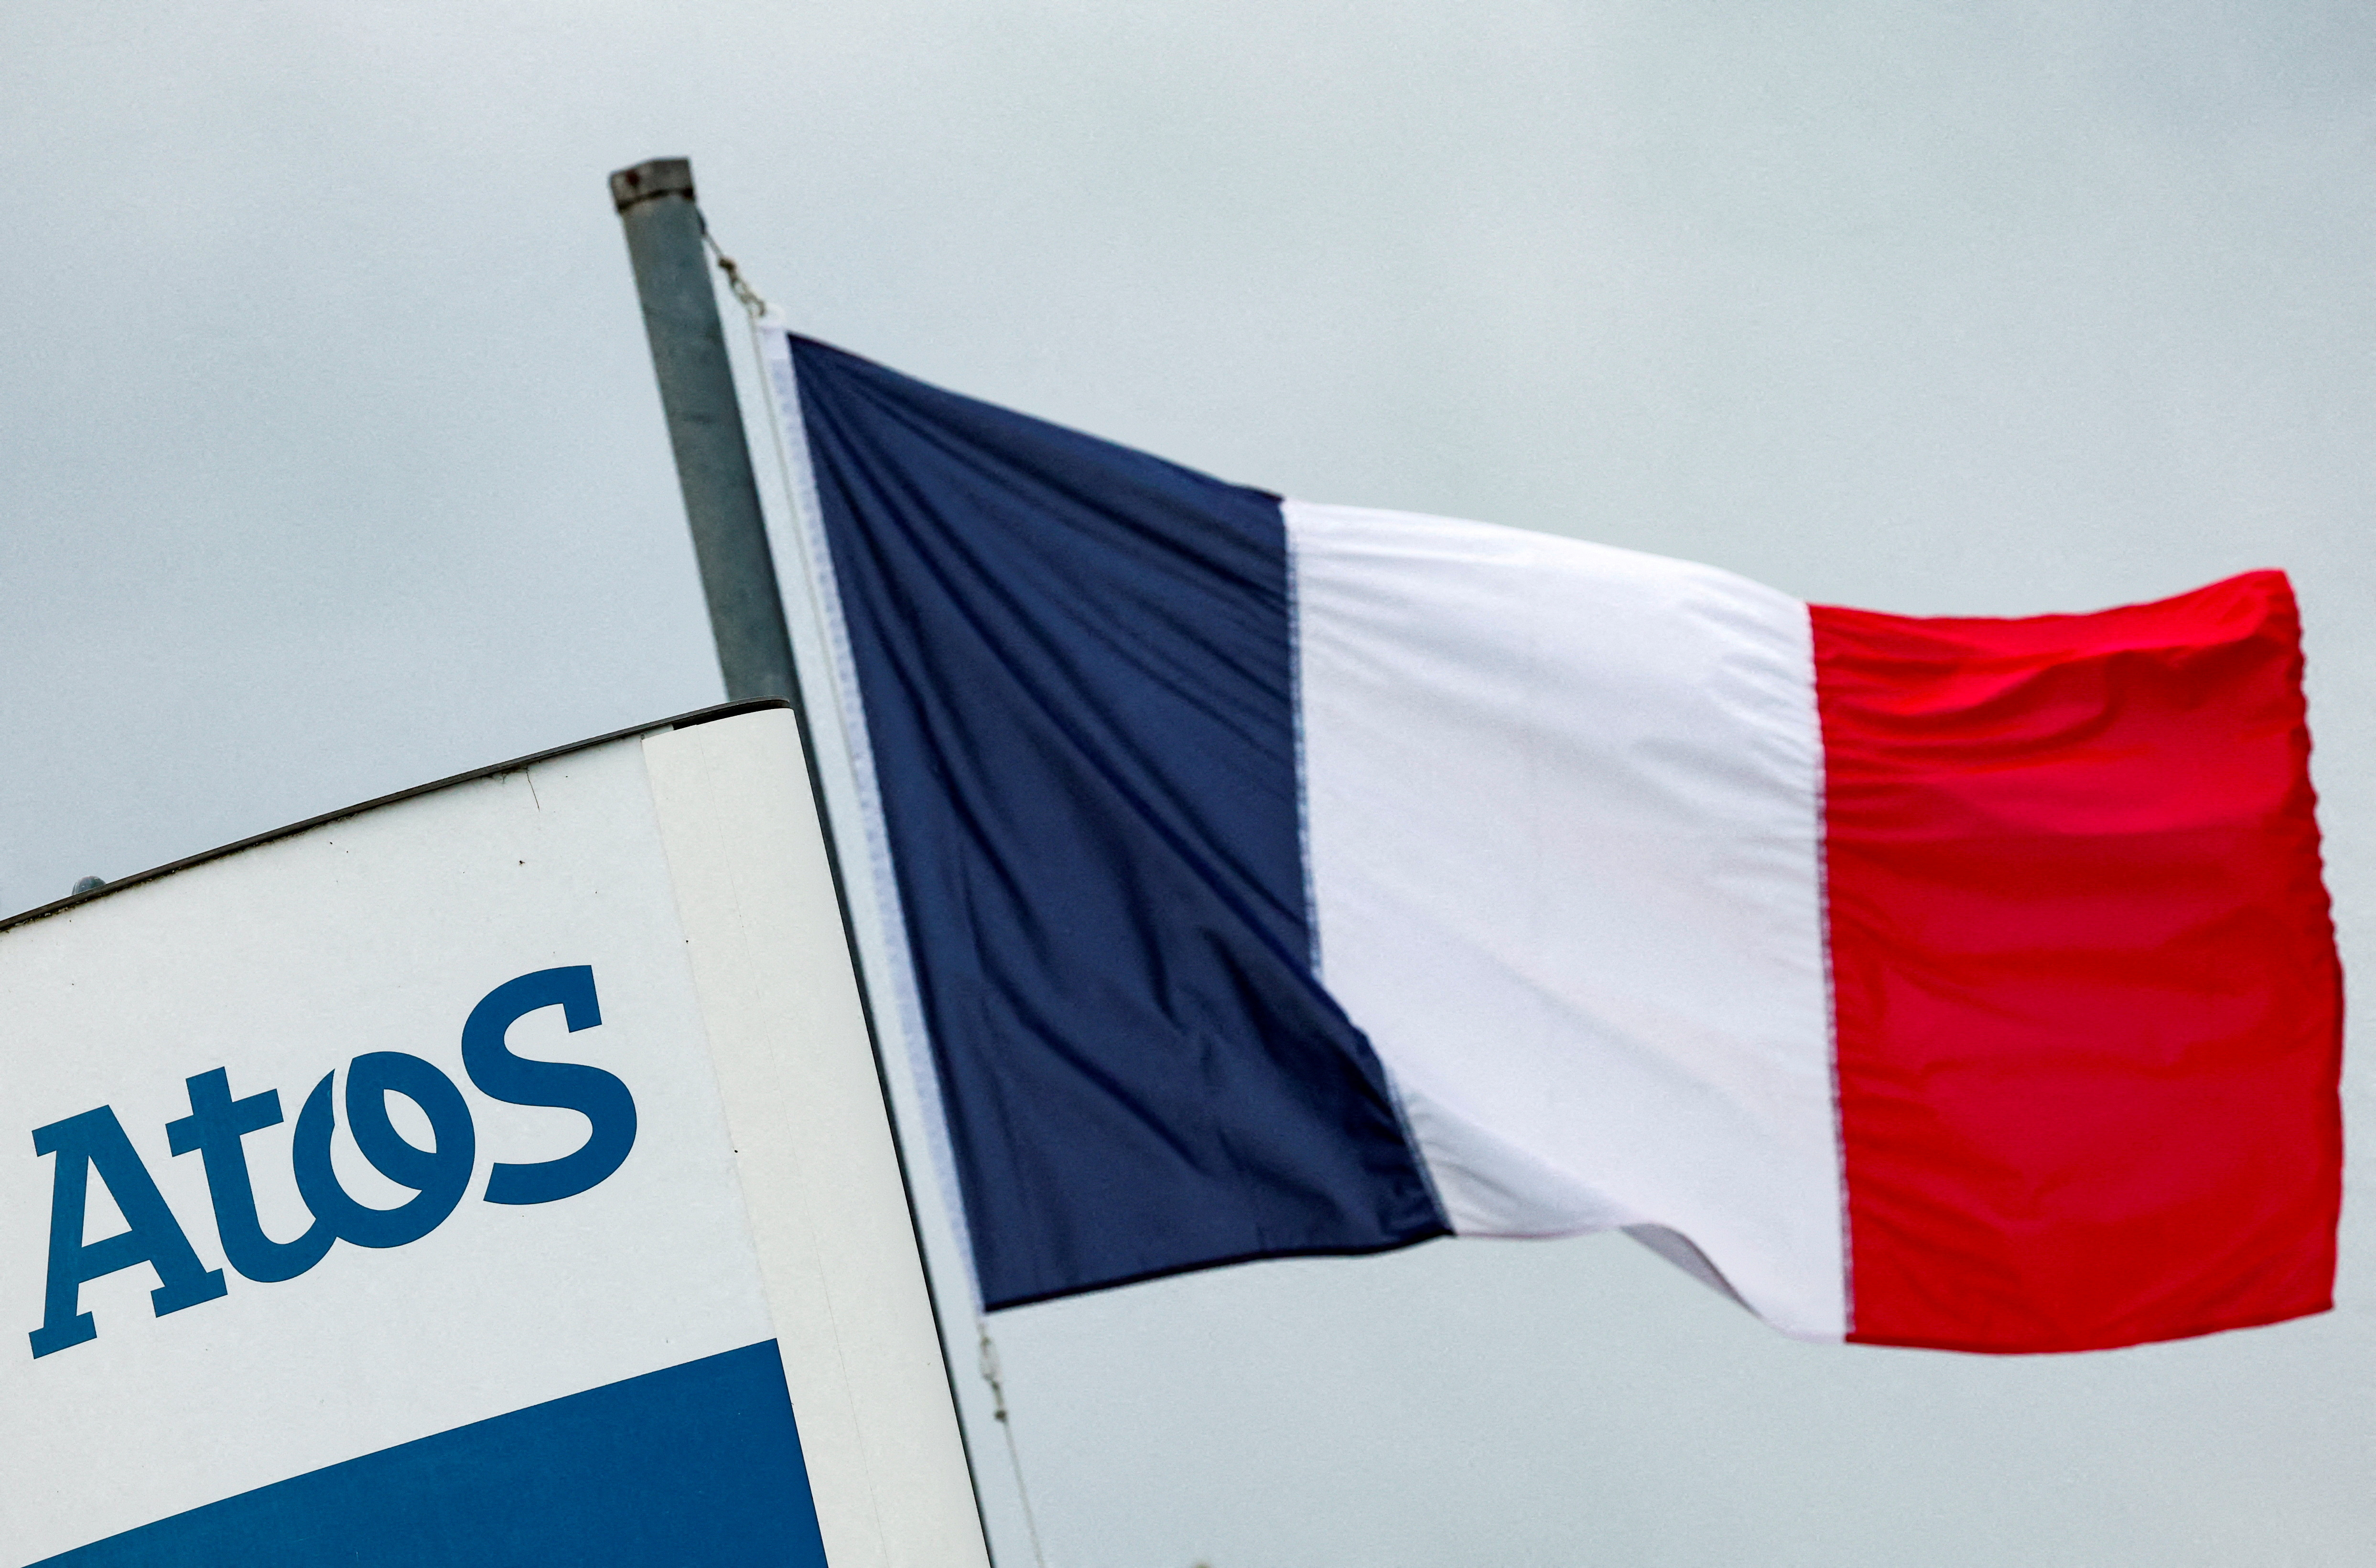 Nucléaire : Atos sur le point de céder sa filiale stratégique Worldgrid au groupe français Alten